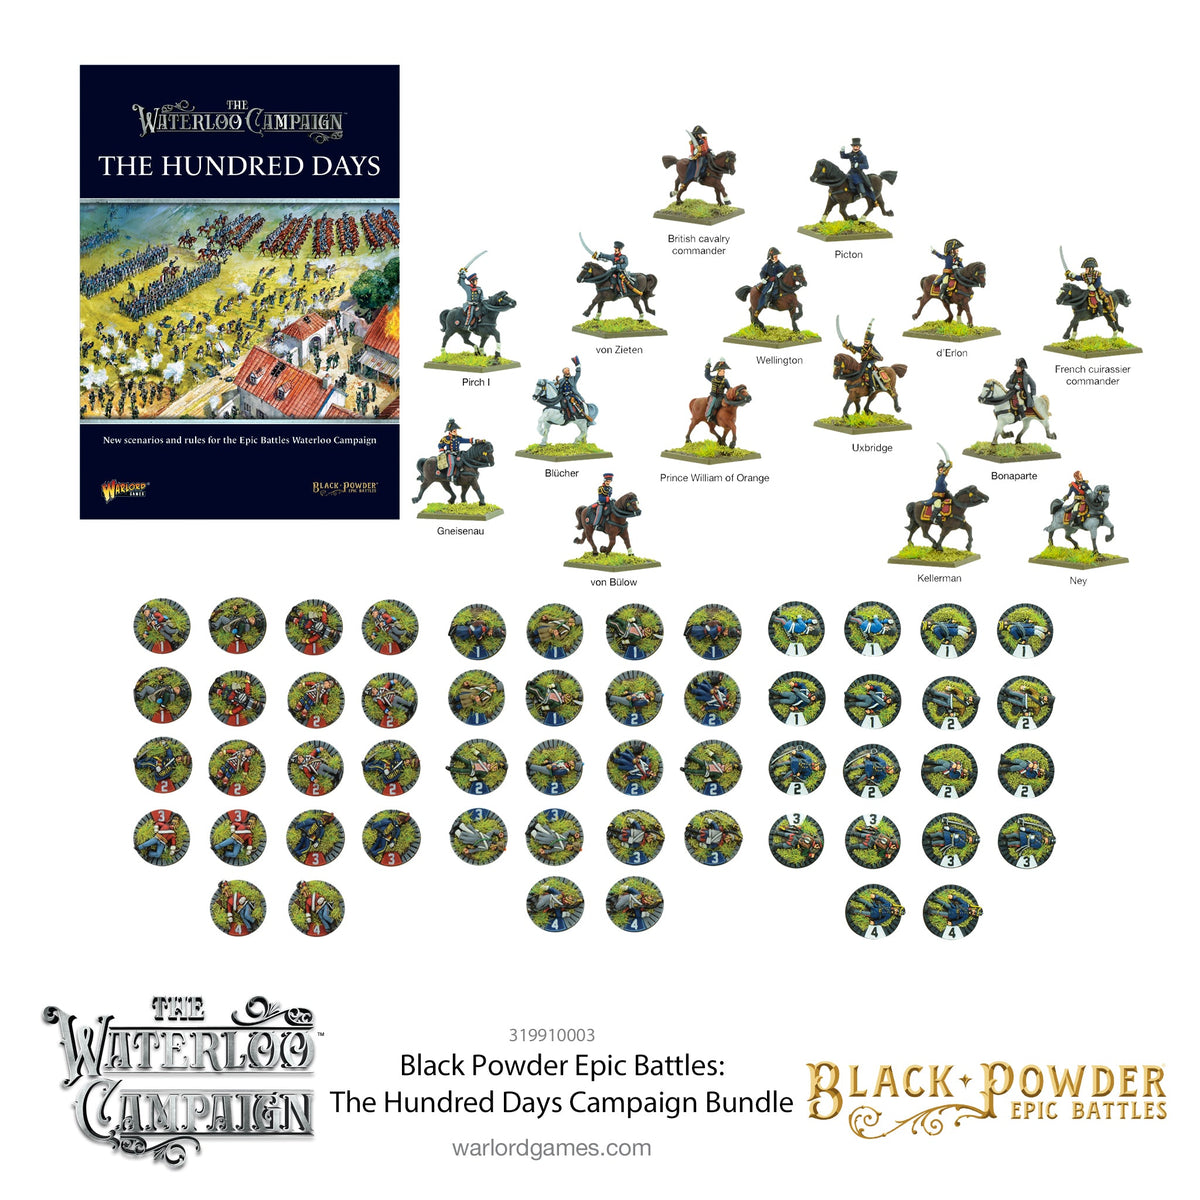 Black Powder Epic Battles: The Hundred Days Campaign Bundle